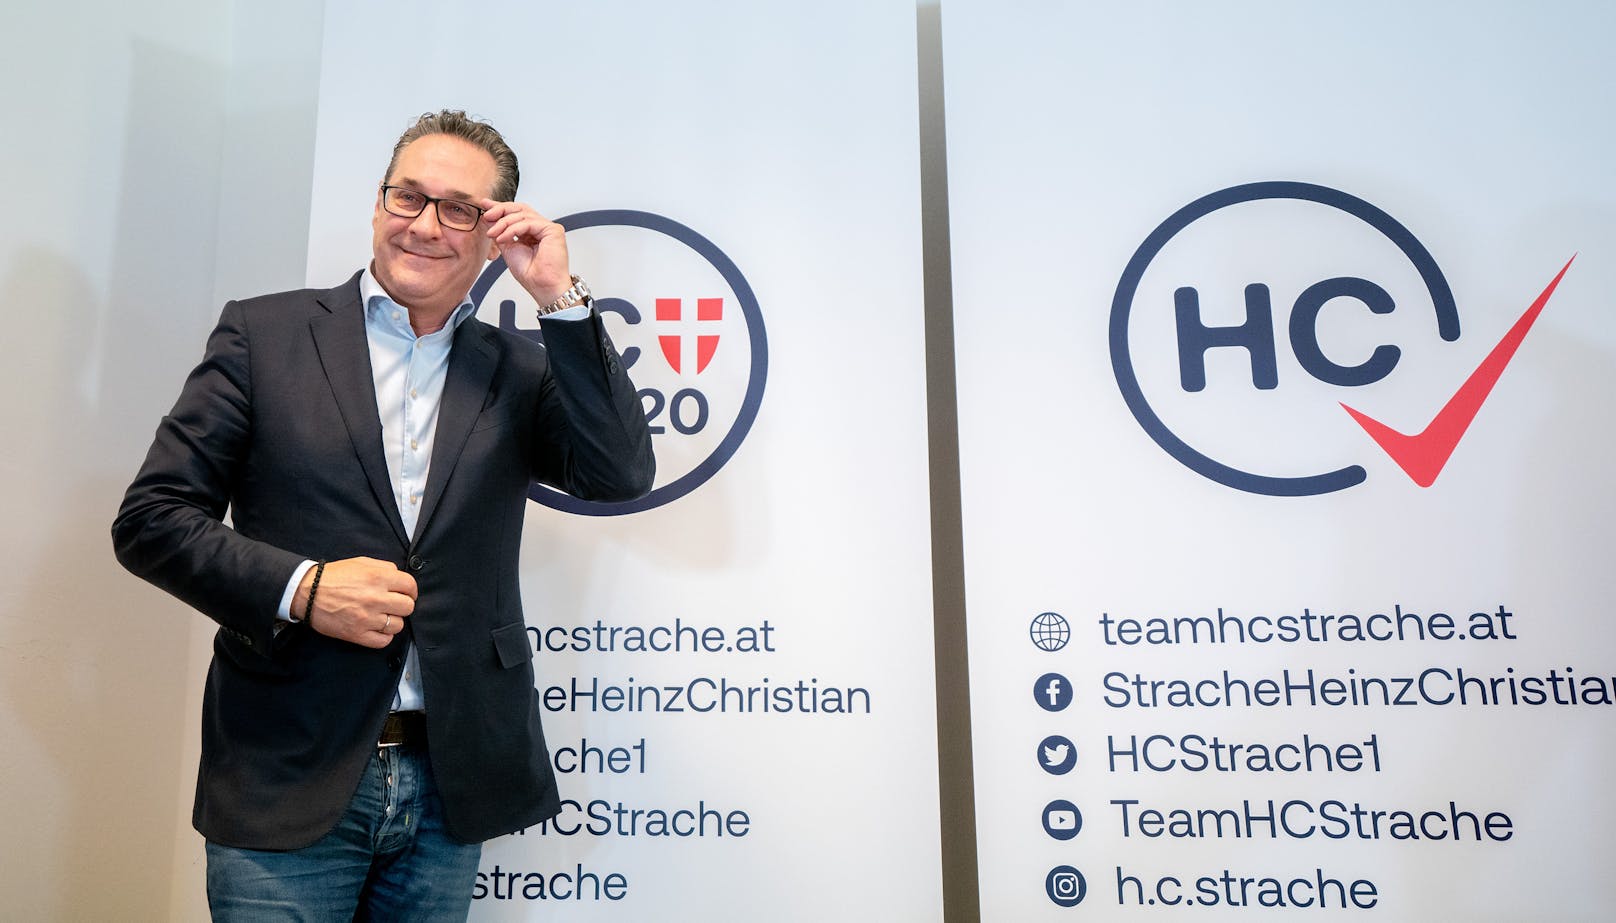 Als Bundesobmann im "Team HC Strache – Allianz für Österreich" vertritt er eine rechtspopulistische Partei in Österreich.